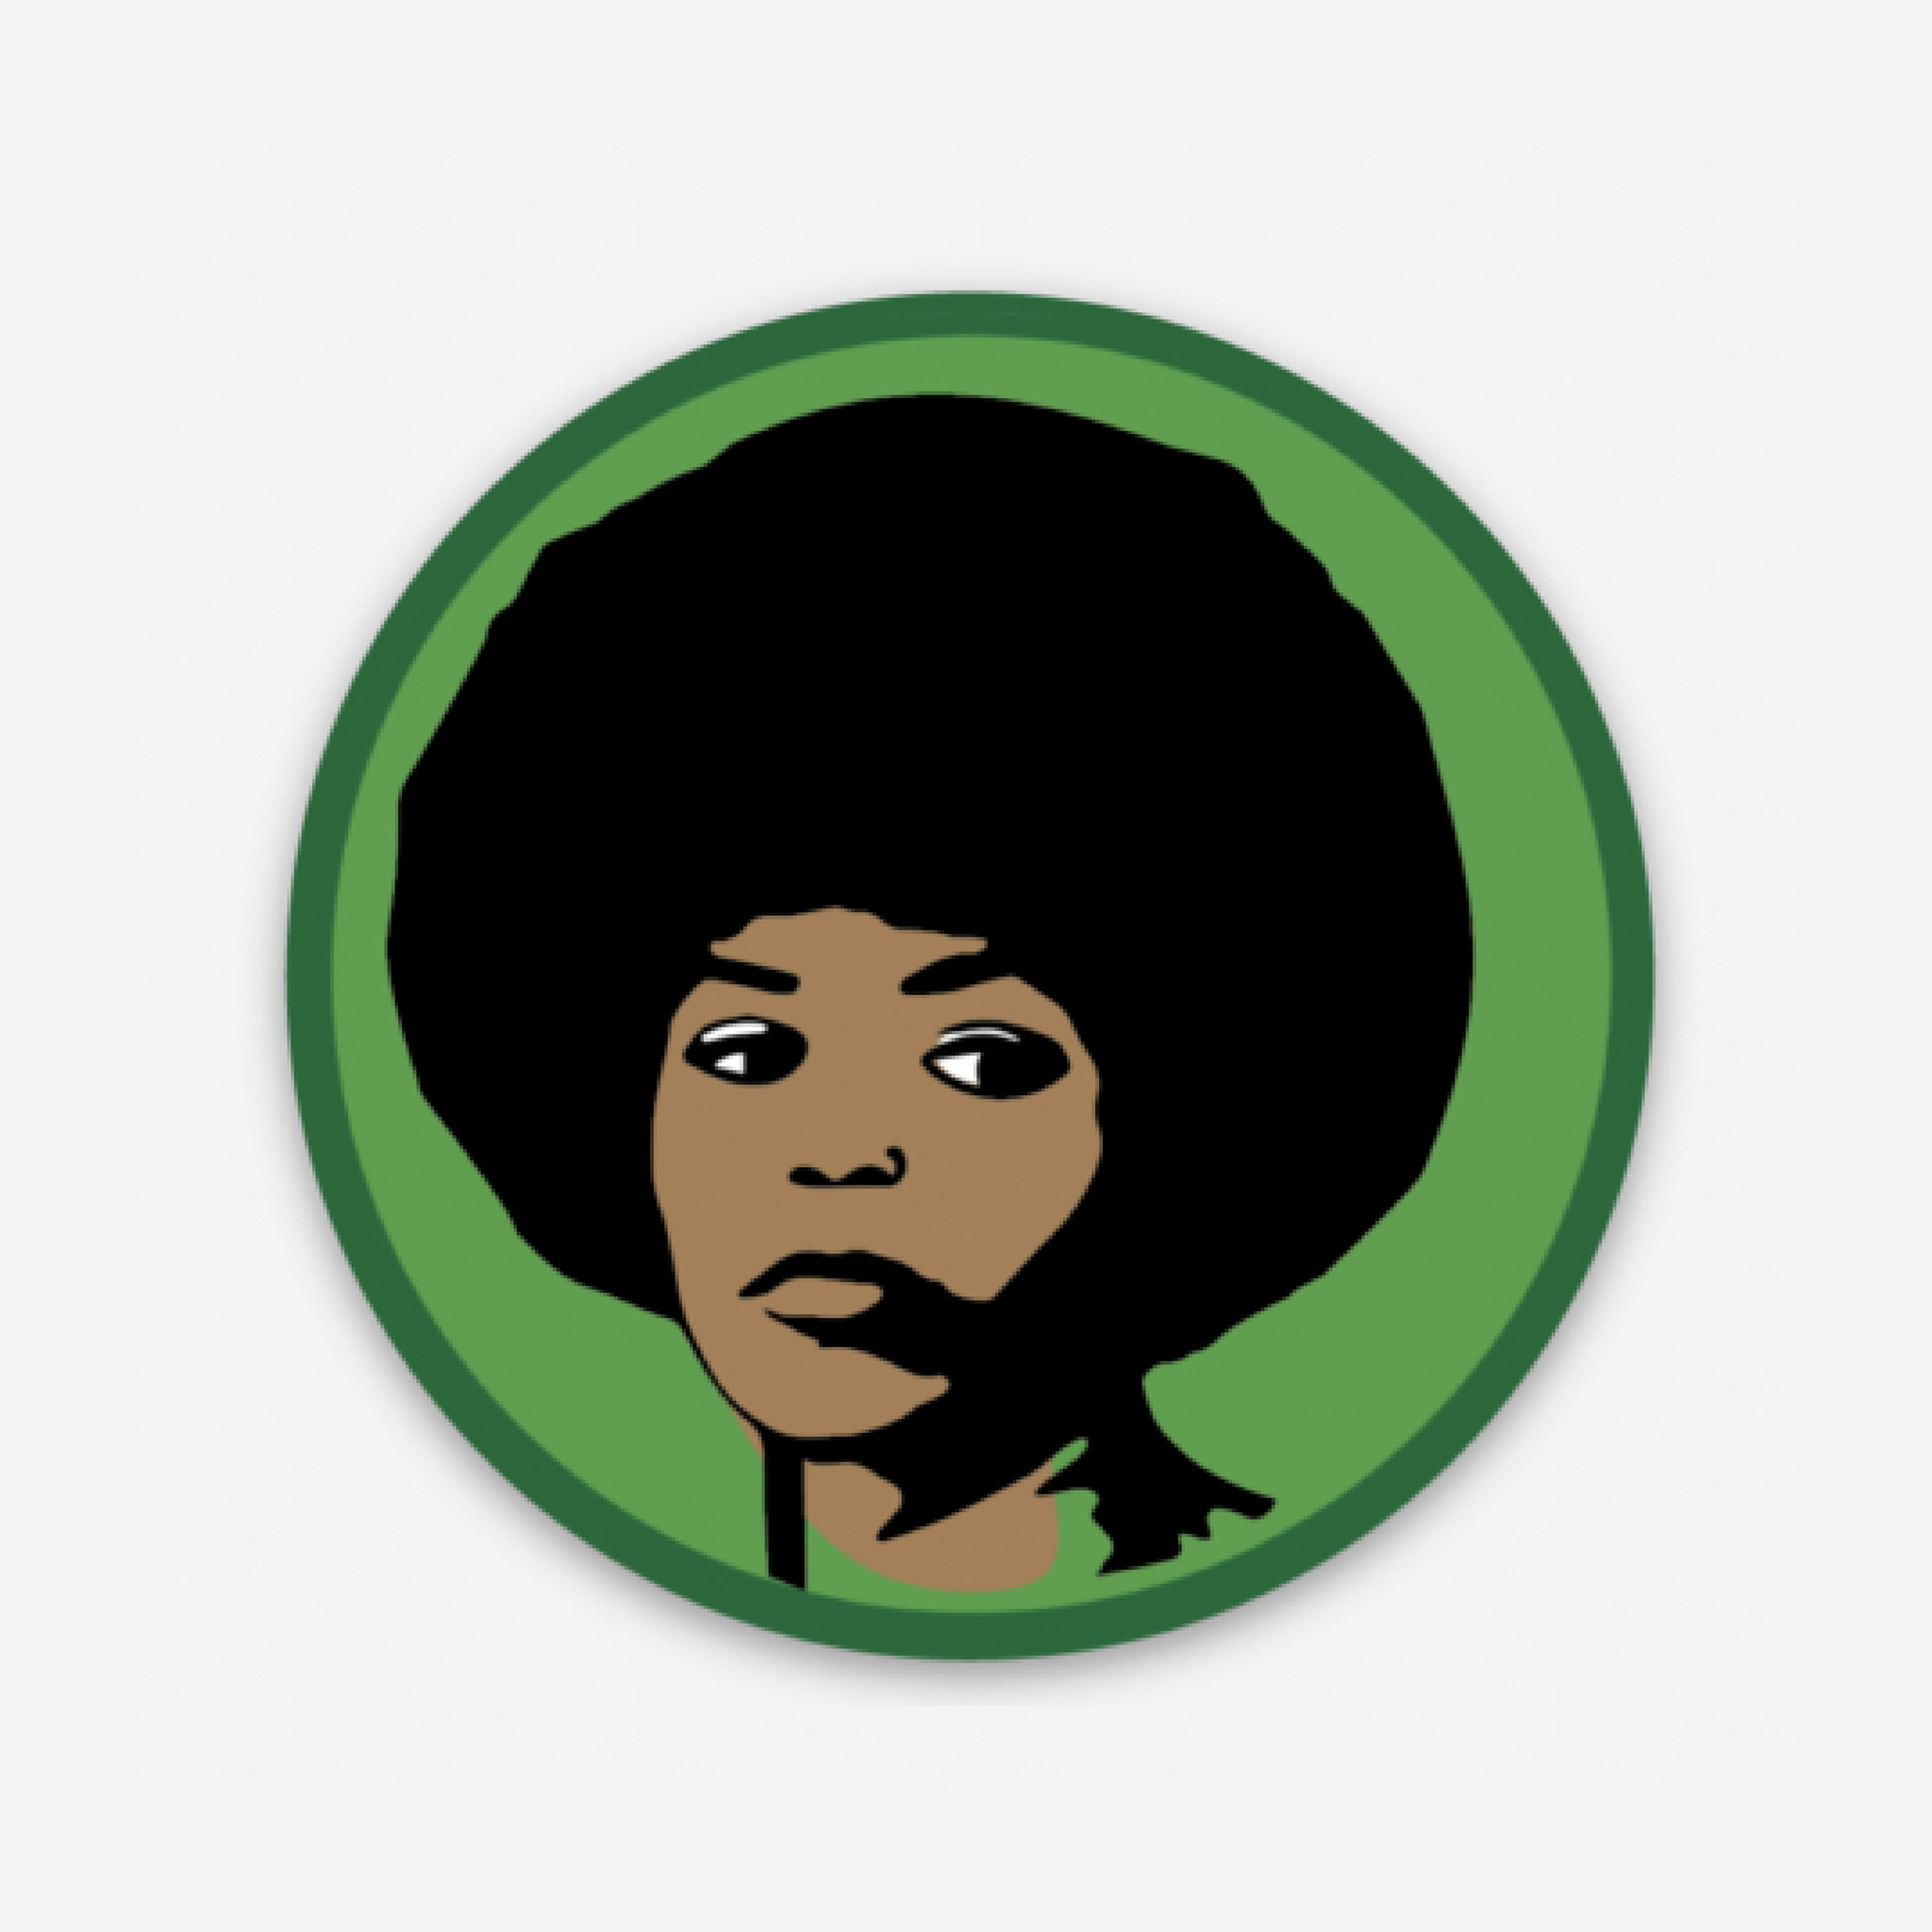 Angela Davis Sticker Green Background with an image of Angela Davis